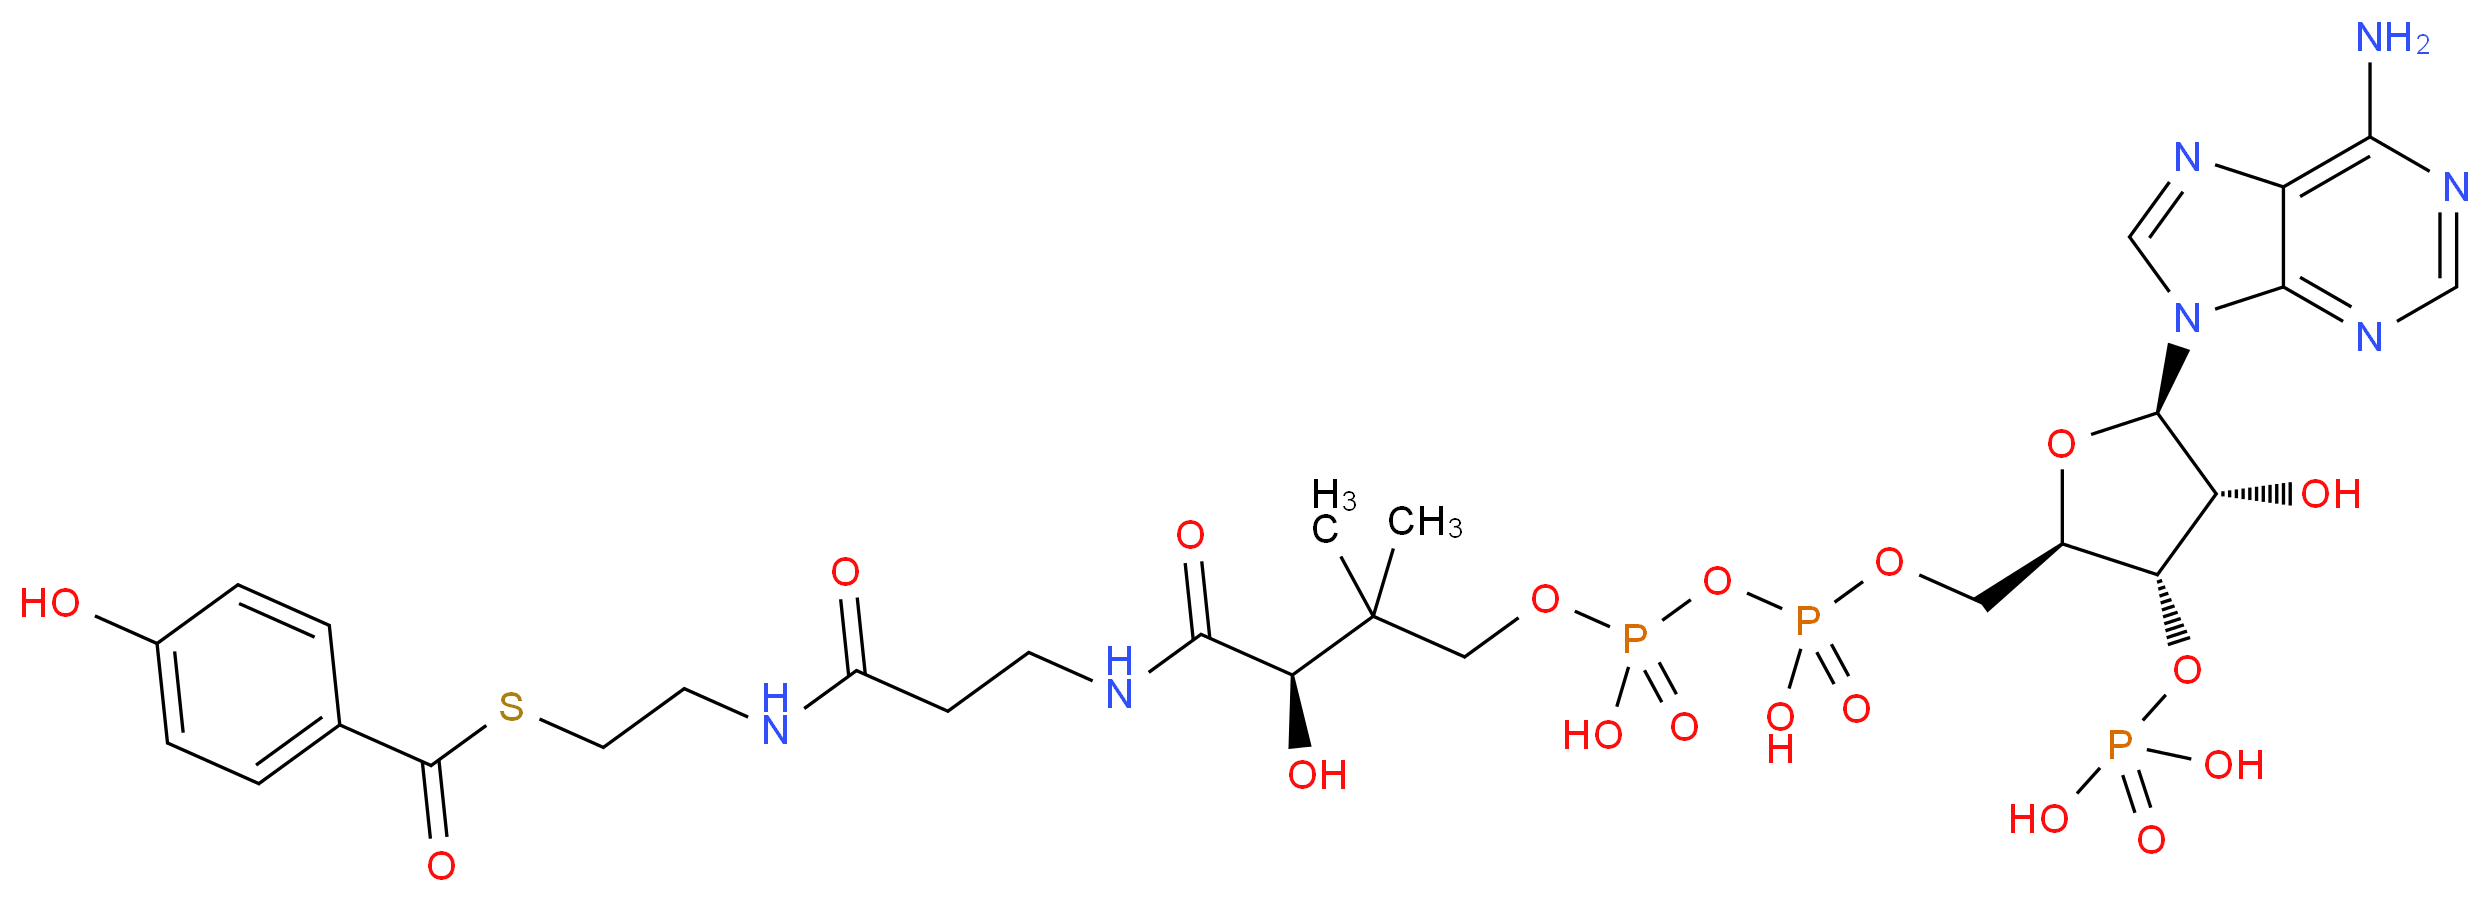 27718-41-8 molecular structure